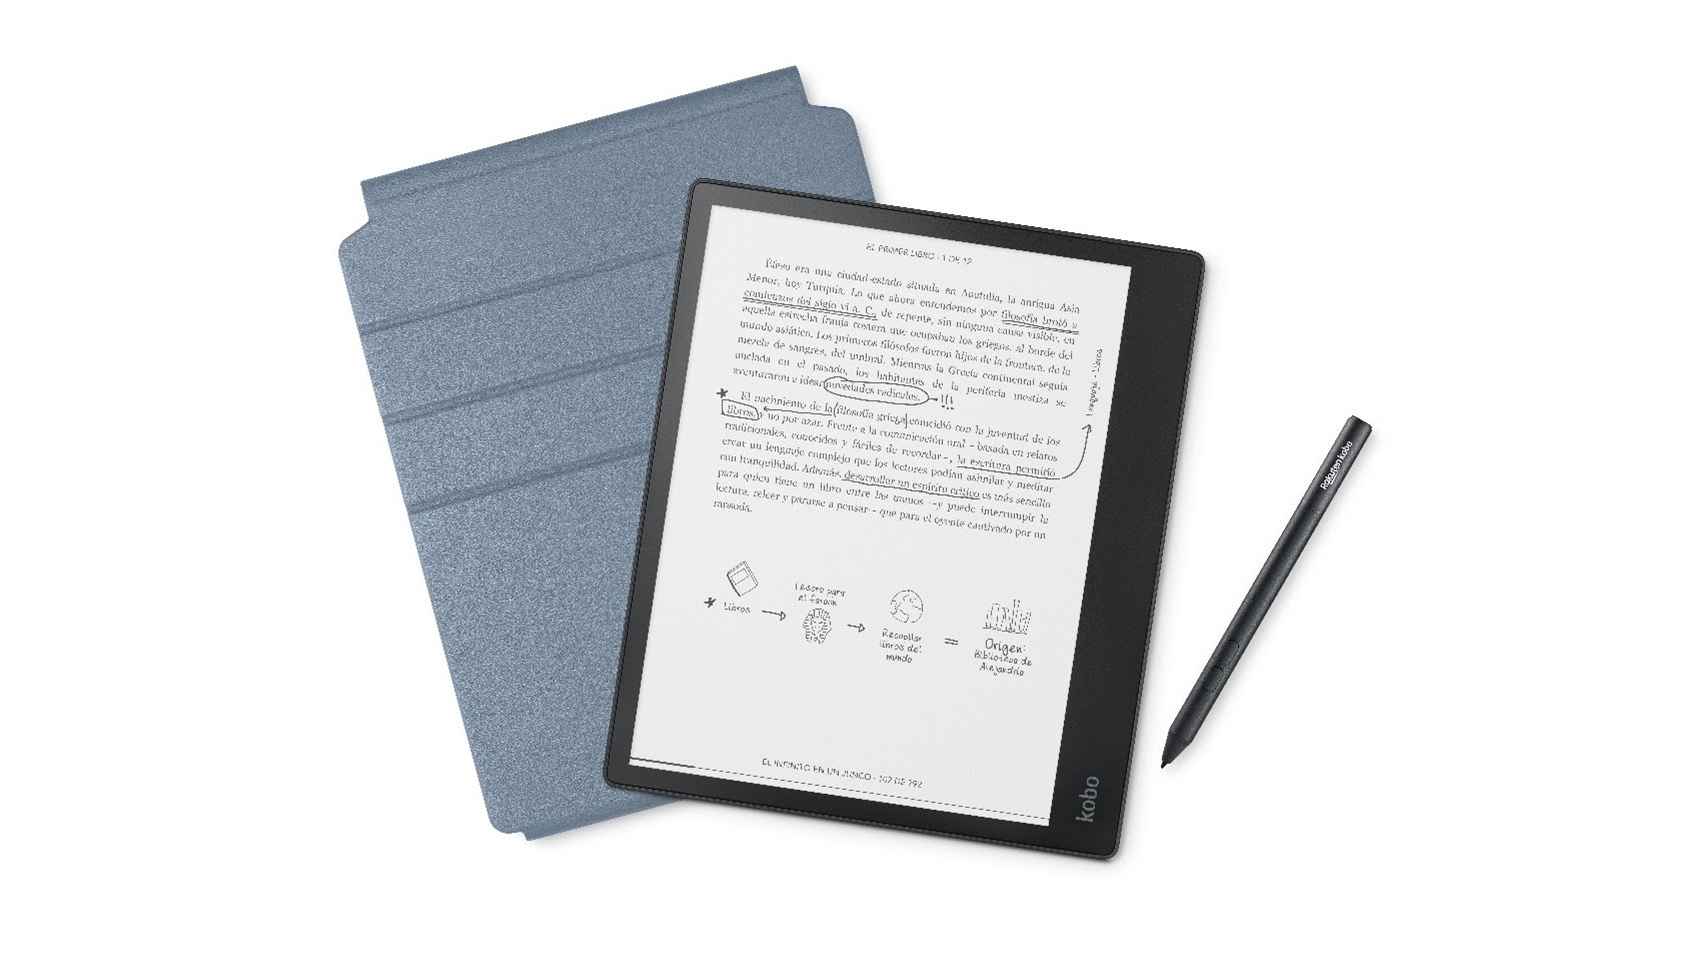 Este libro electrónico incorpora un lápiz táctil para tomar notas